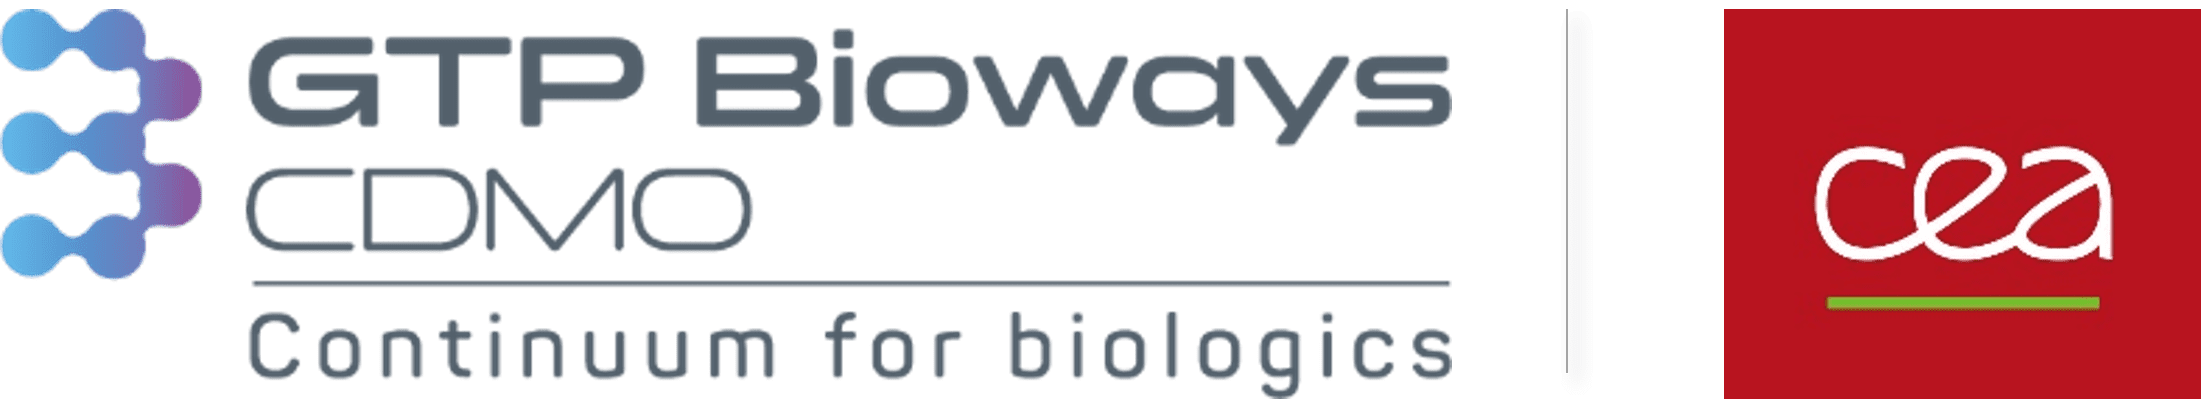 GTP Bioways CEA